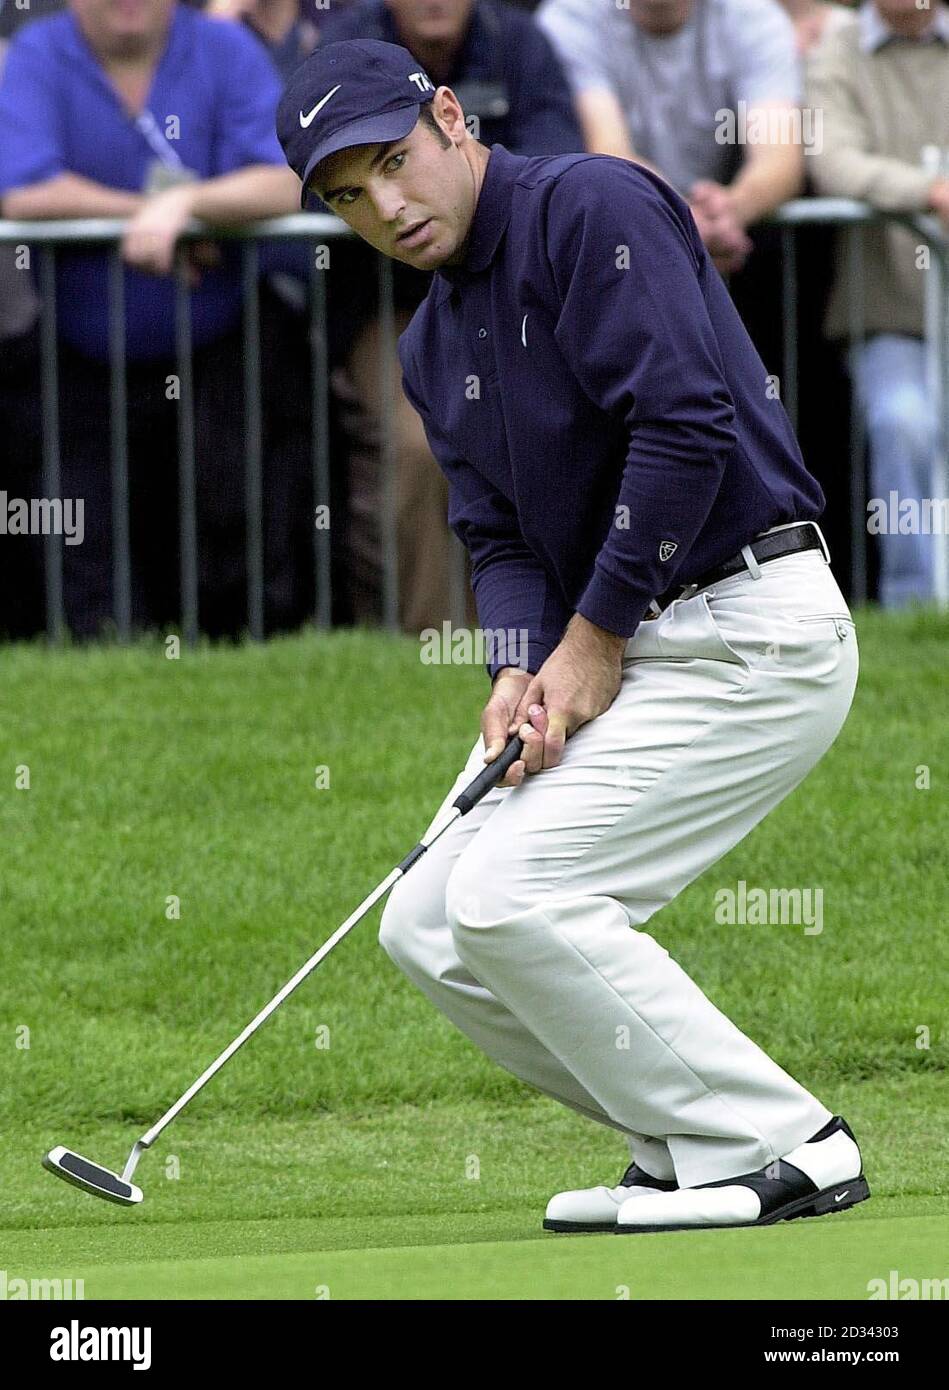 Der Südafrikaner Trevor Immelman verpasst während der Volvo PGA Championship im Wentworth Golf Club, Virginia Water, Surrey, einen Adlerputt auf dem 18. Loch. Stockfoto